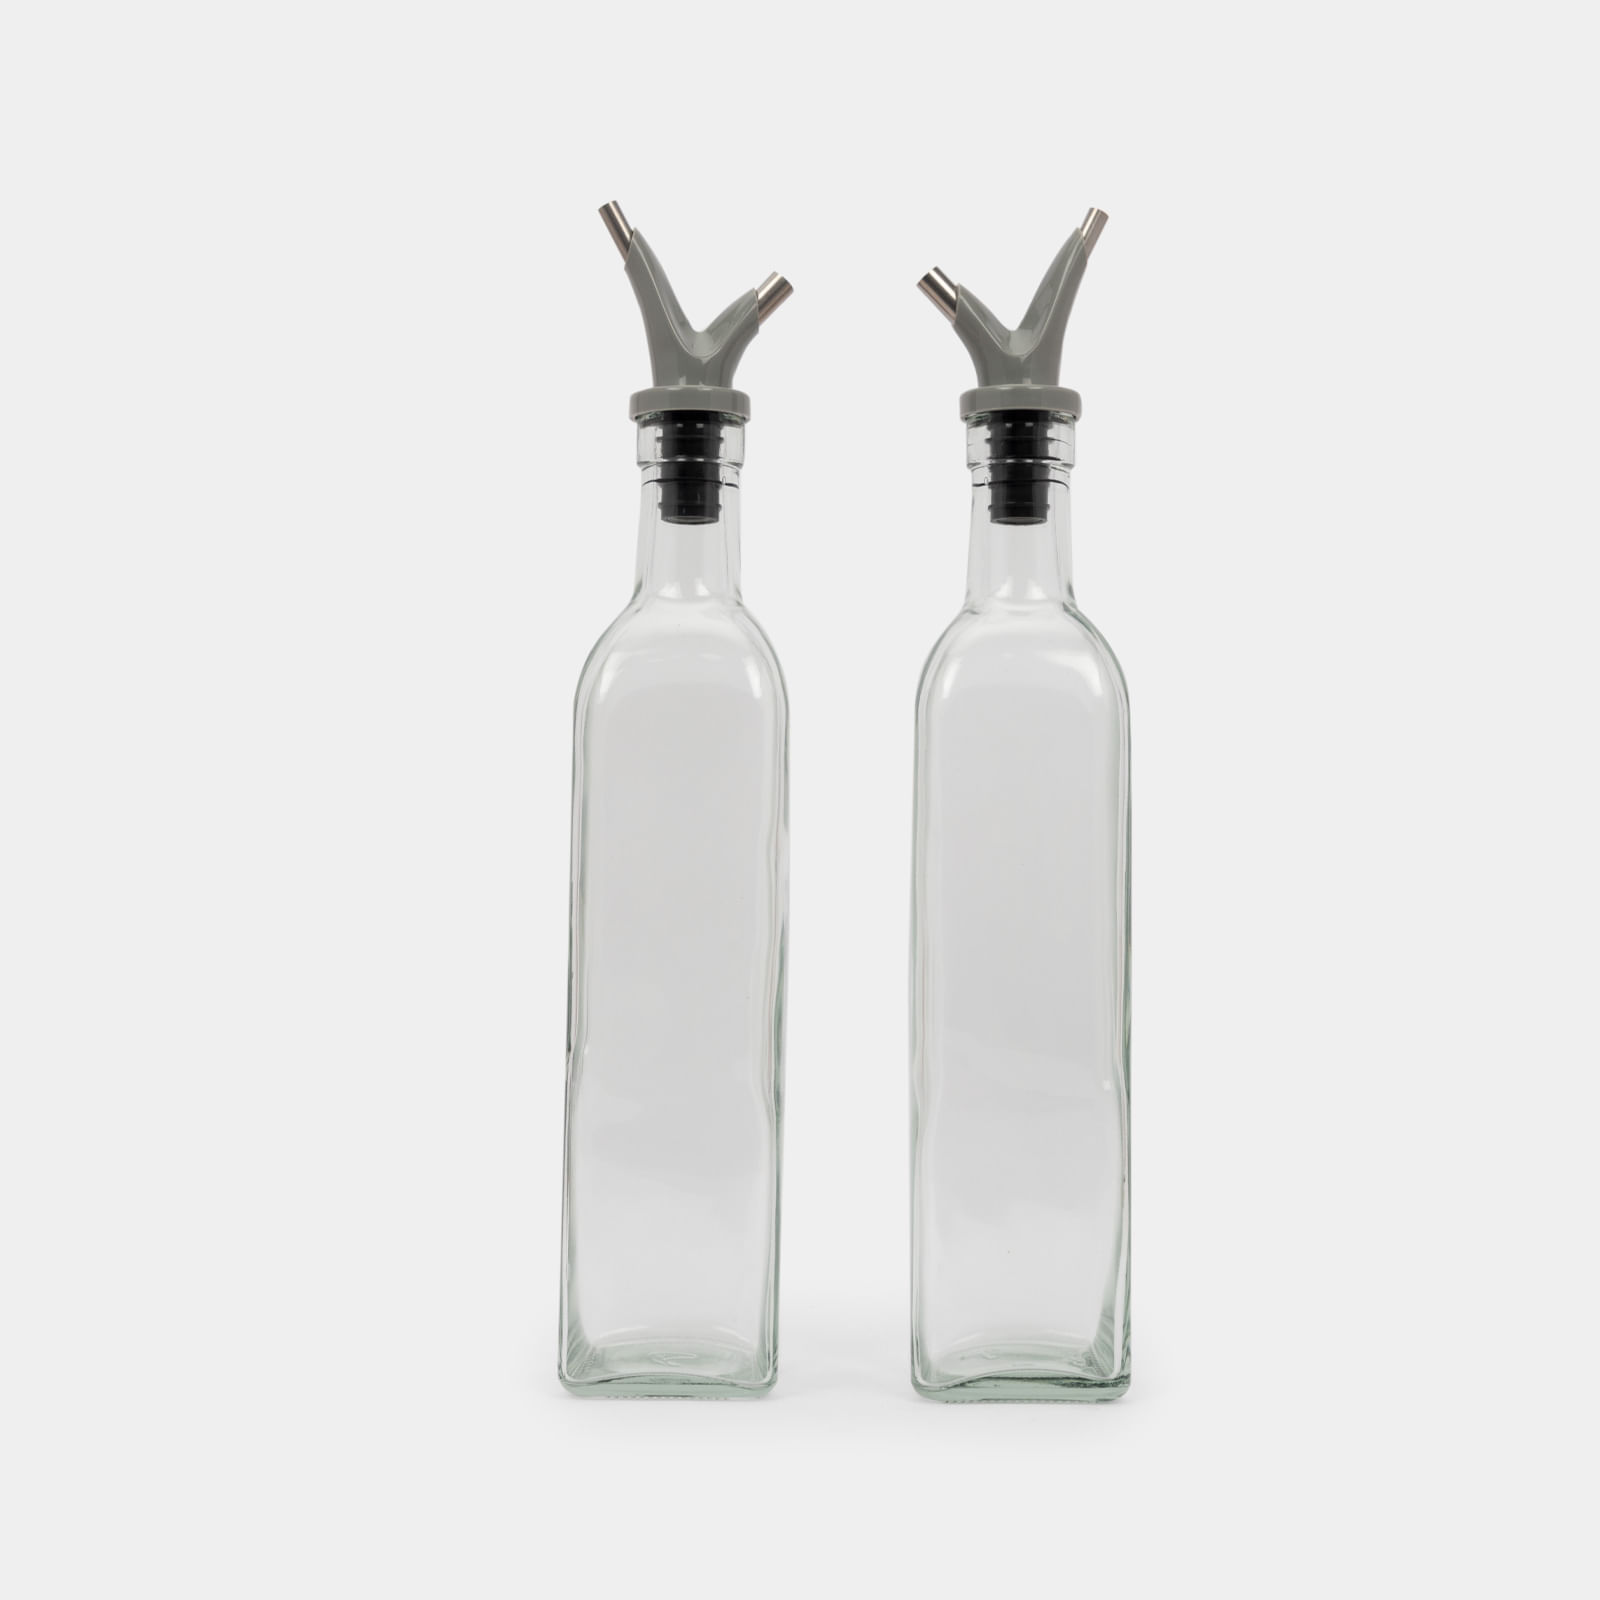 Botellas de cristal para aceite y vinagres: todos los tamaños